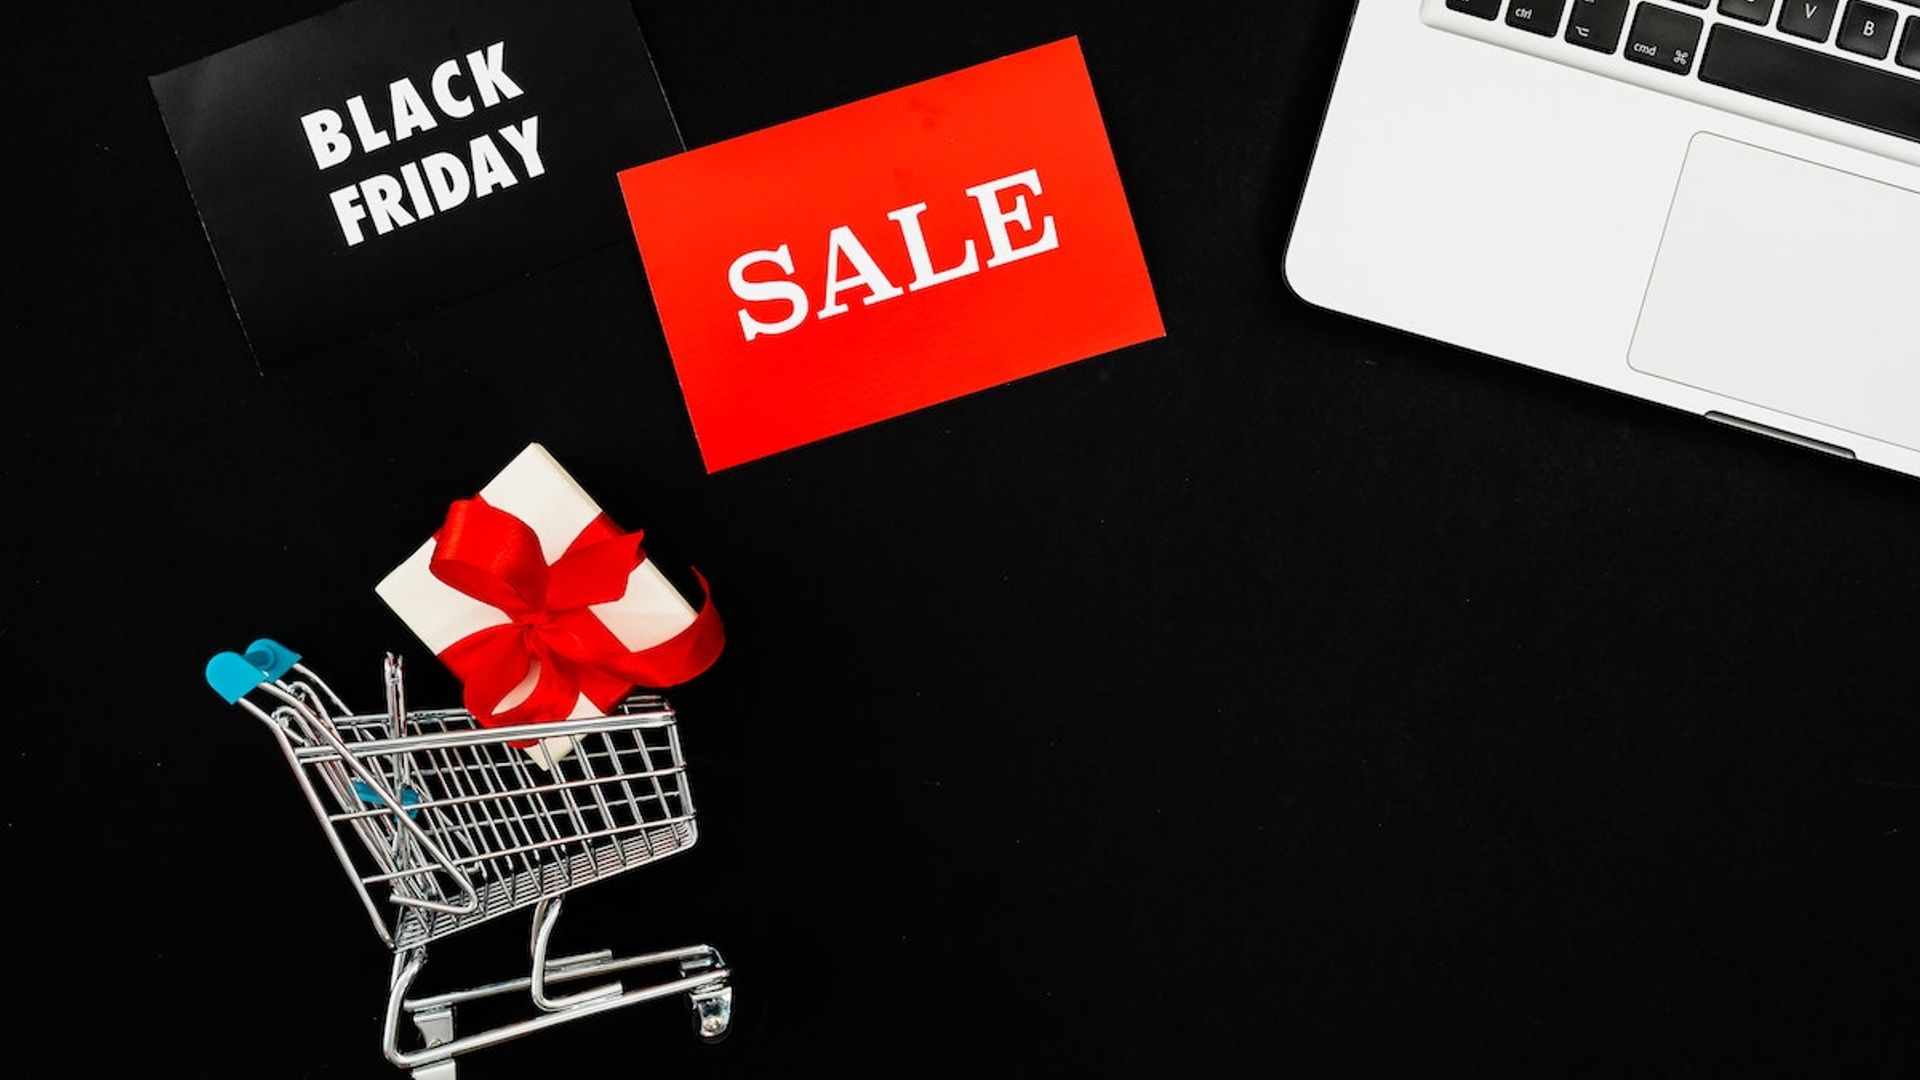 Nordstrom's Black Friday Designer Bag Sale: Save Up To 50% Off